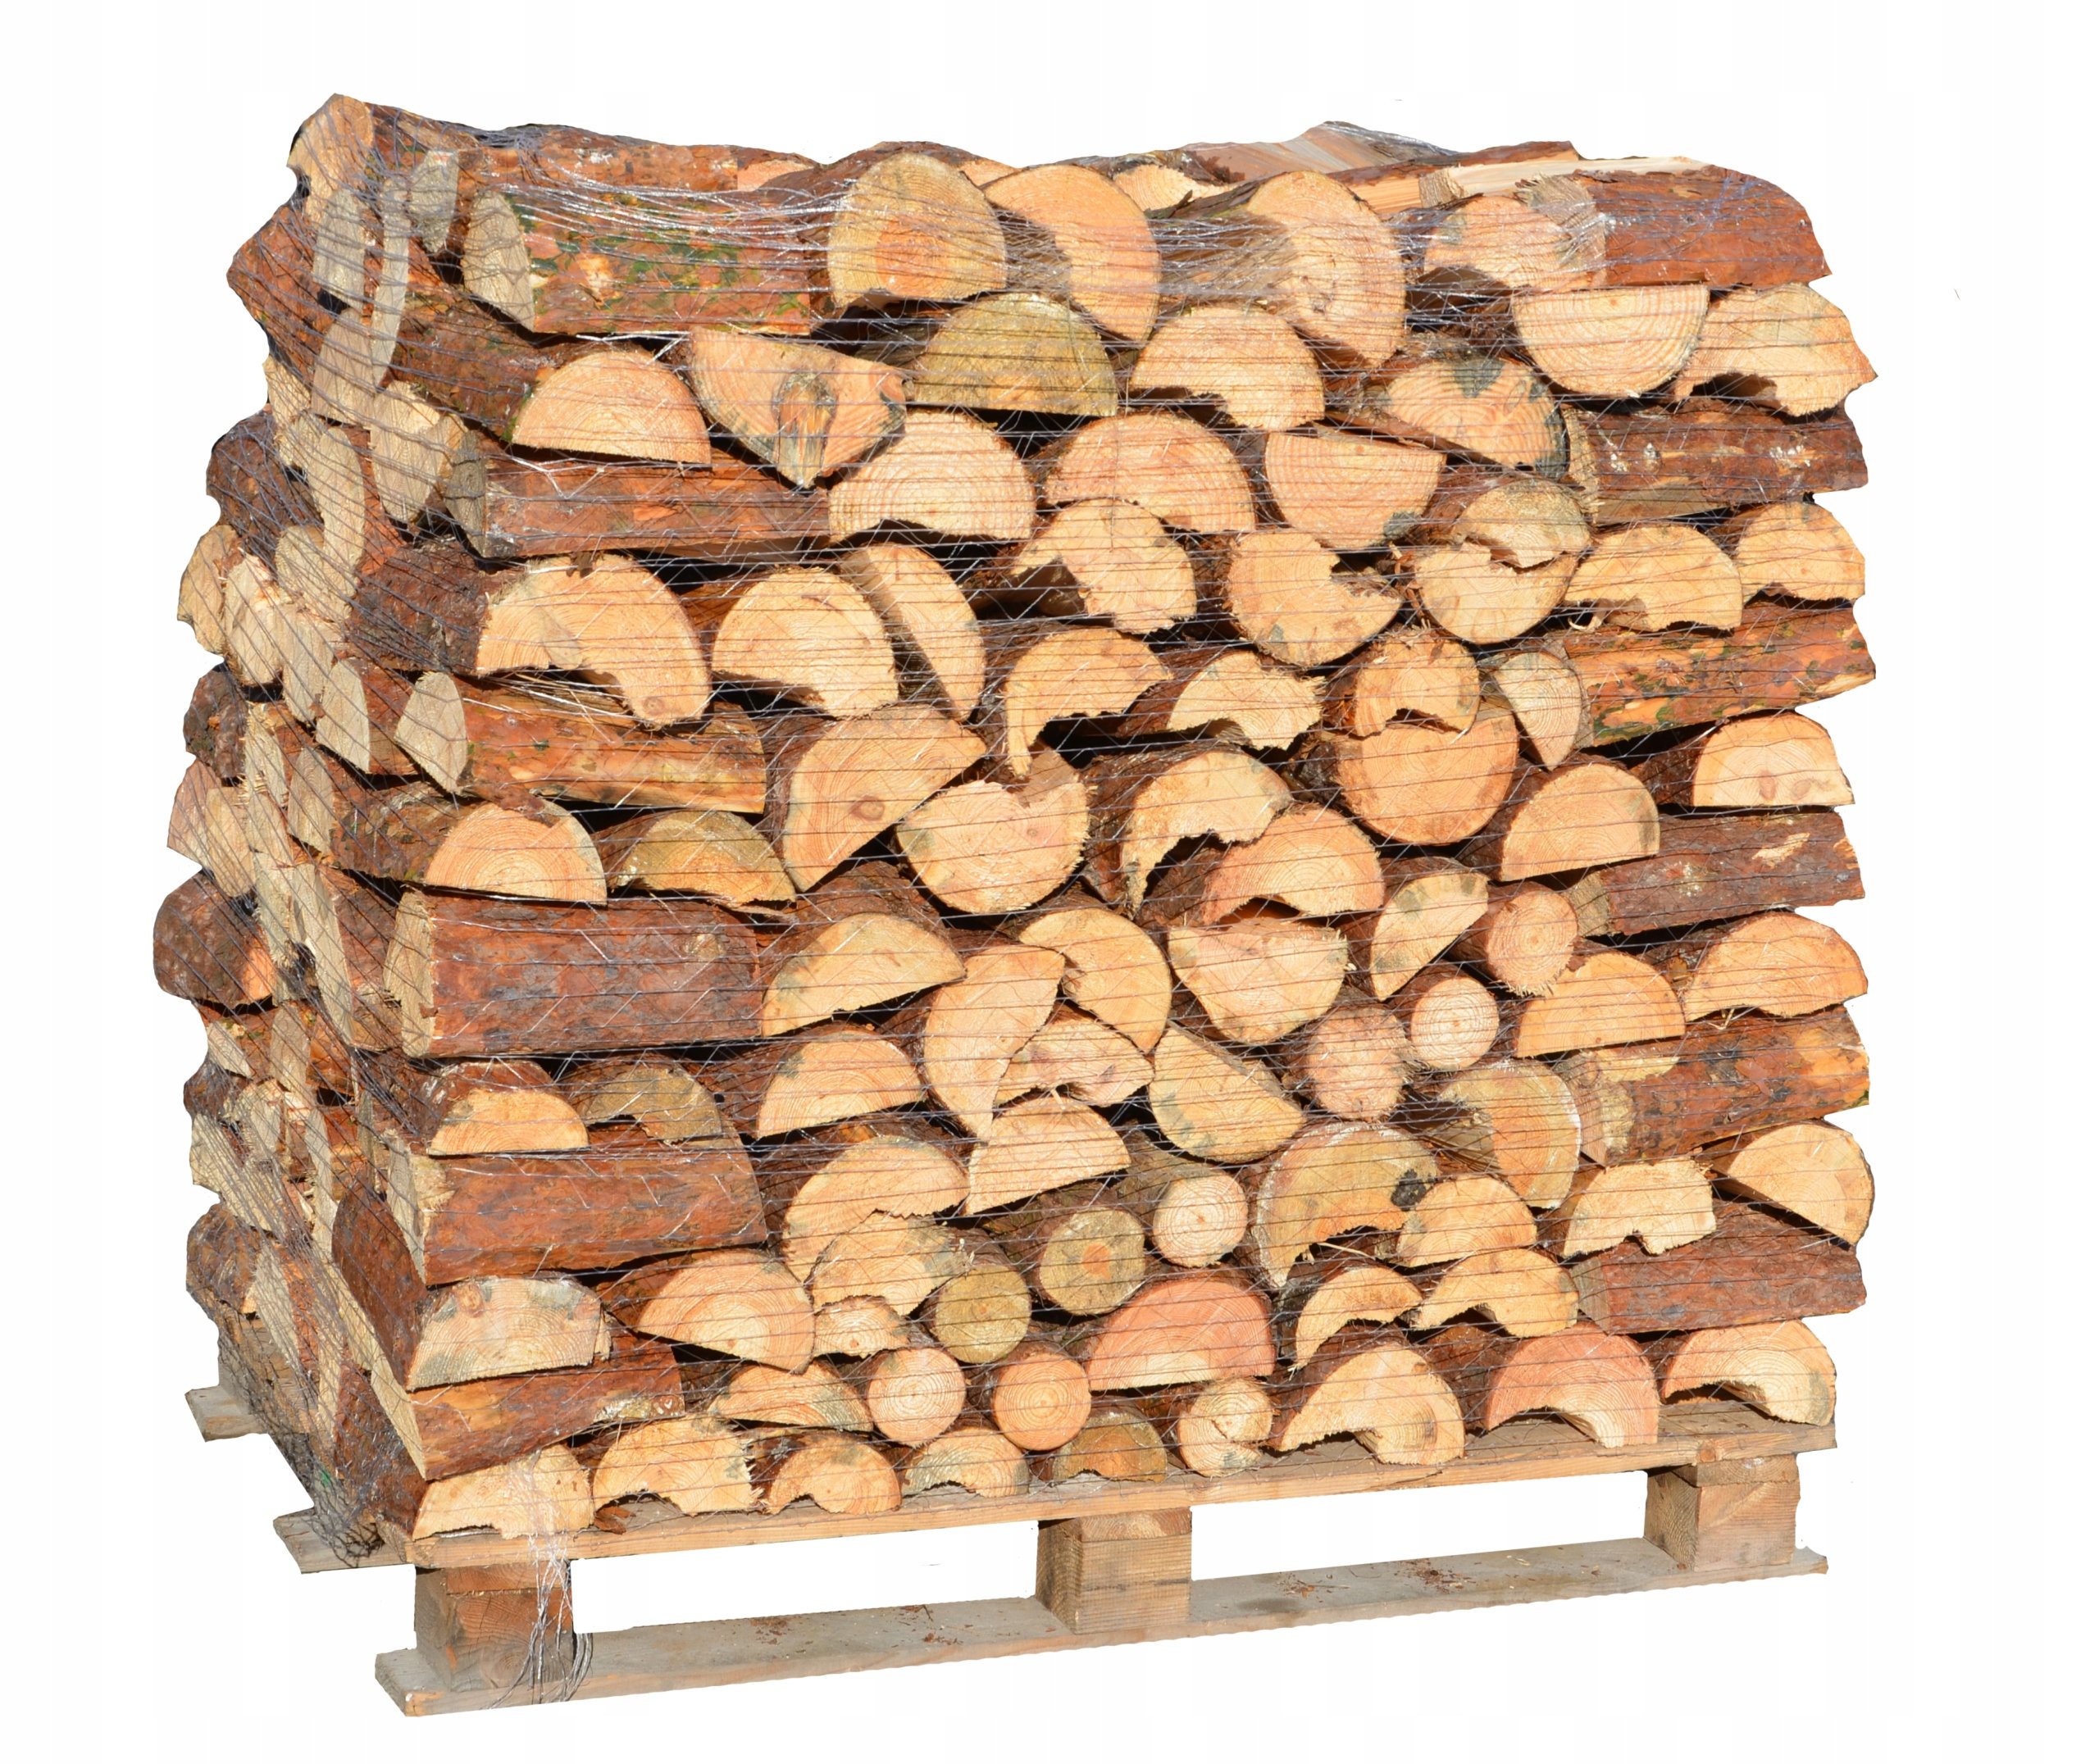 Дрова купить в лен. Grillkoff дрова берёзовые, 0.015 м³. Печь на дровах. Сосна колотая дрова. Дрова еловые.